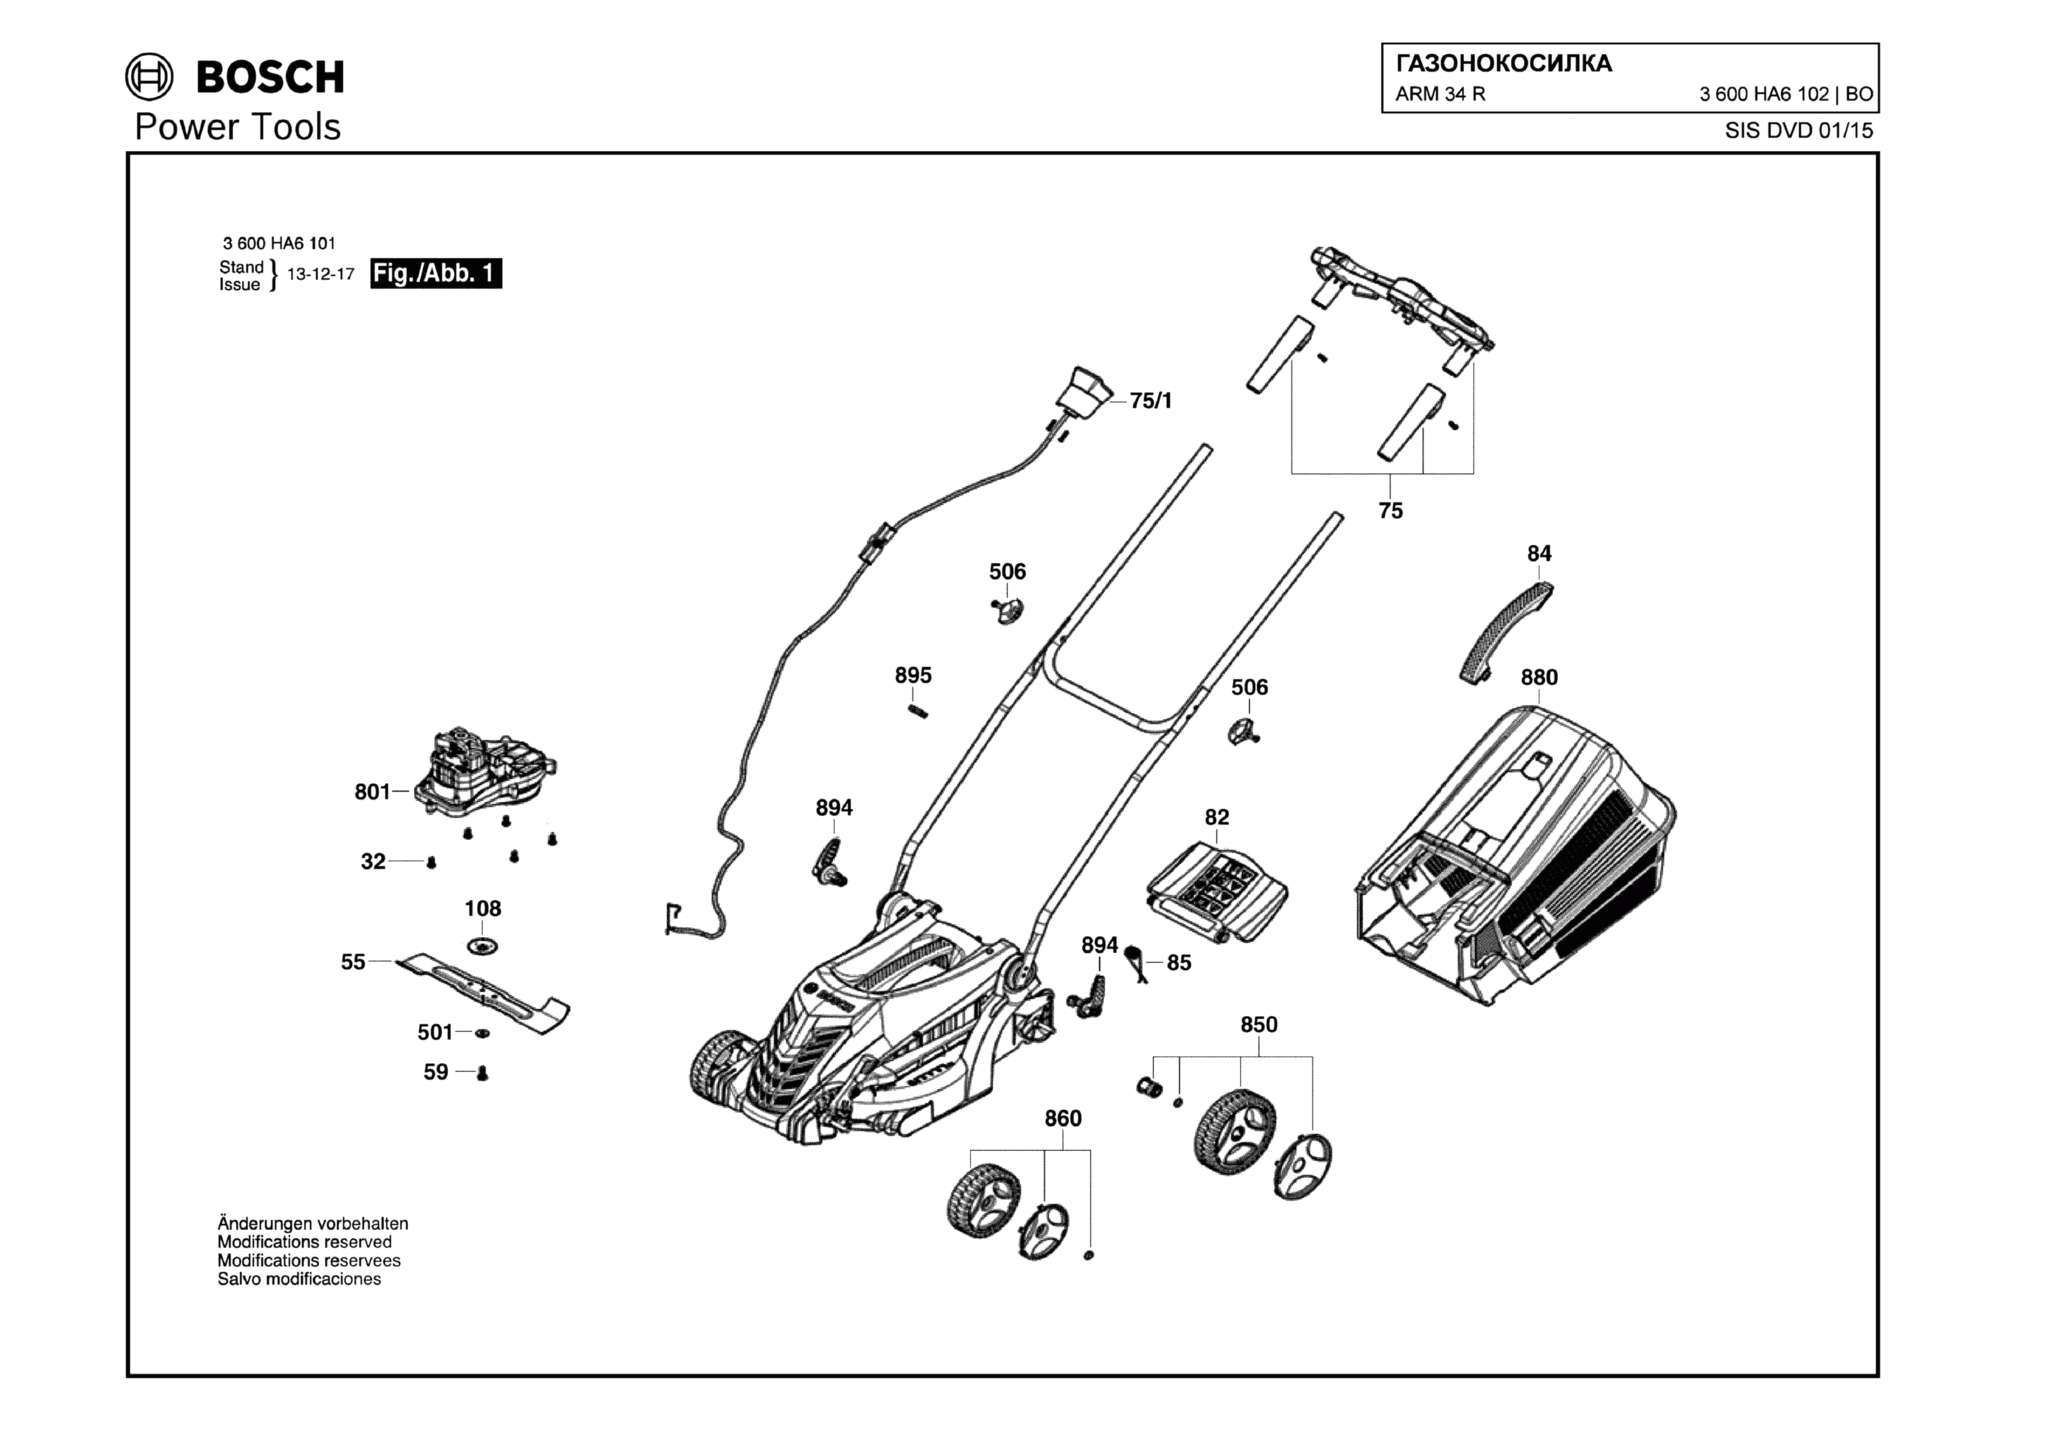 Запчасти, схема и деталировка Bosch ARM 34 R (ТИП 3600HA6102)